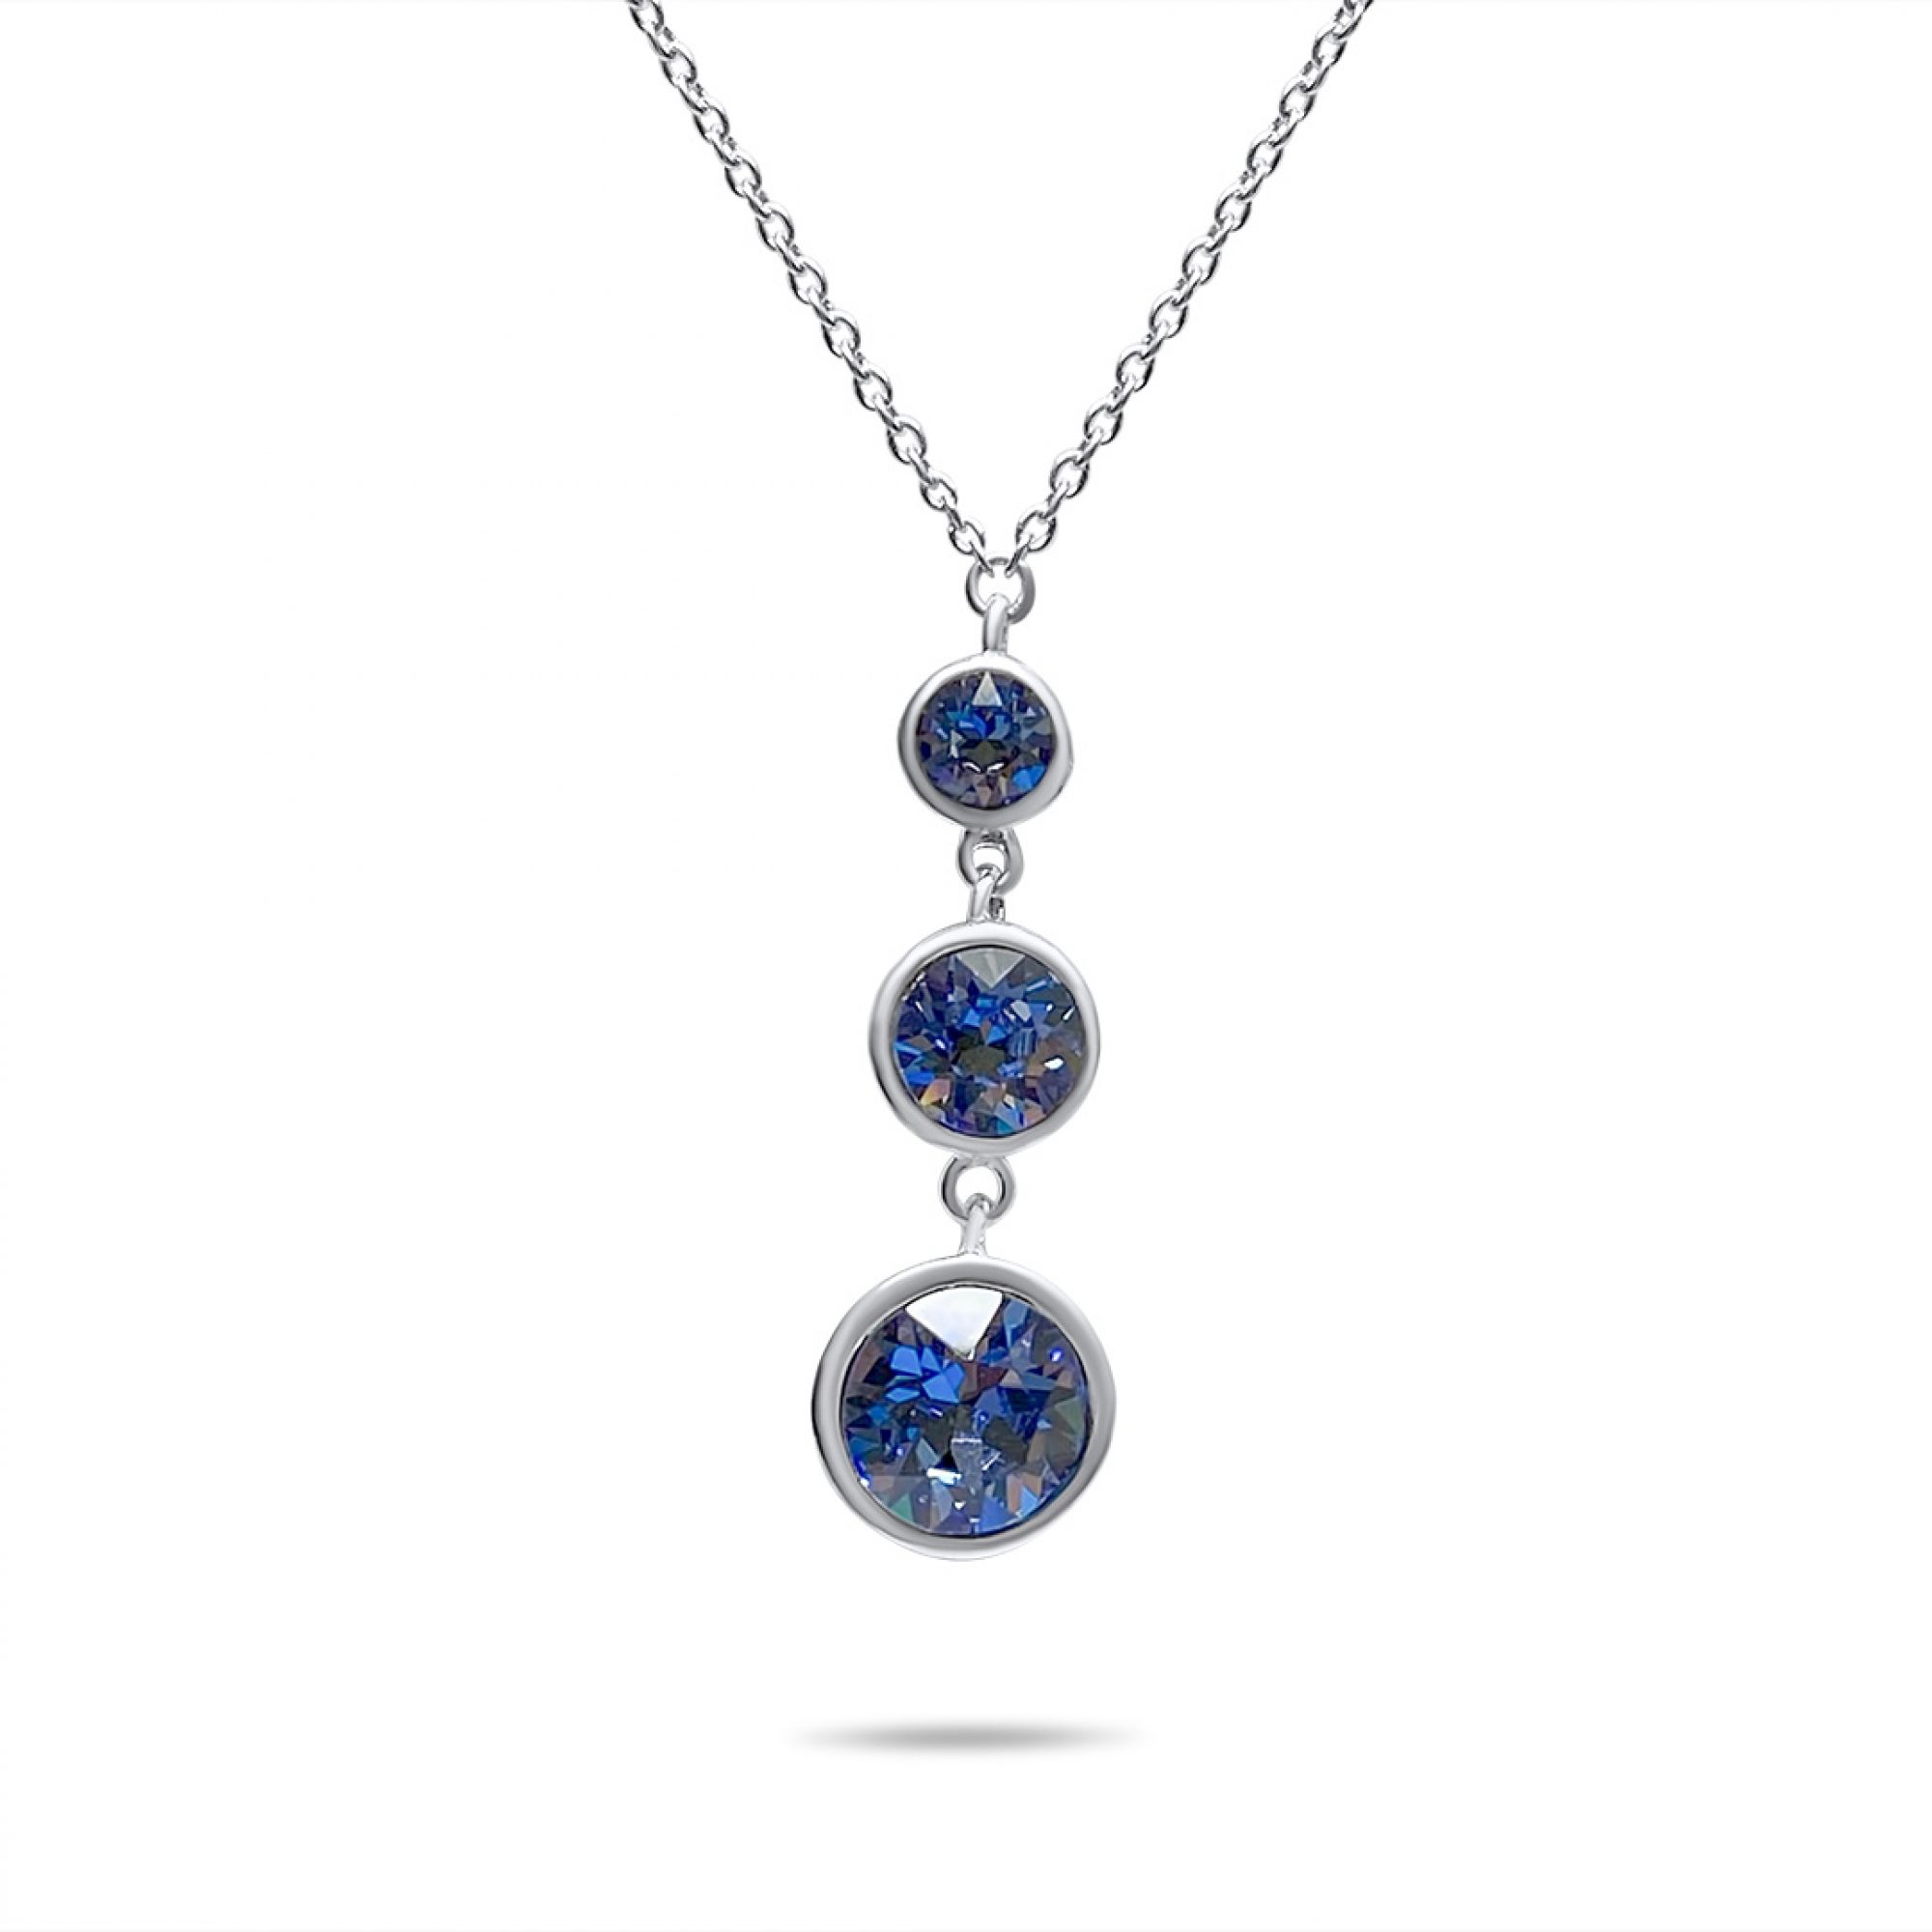 Necklace with zircon stones